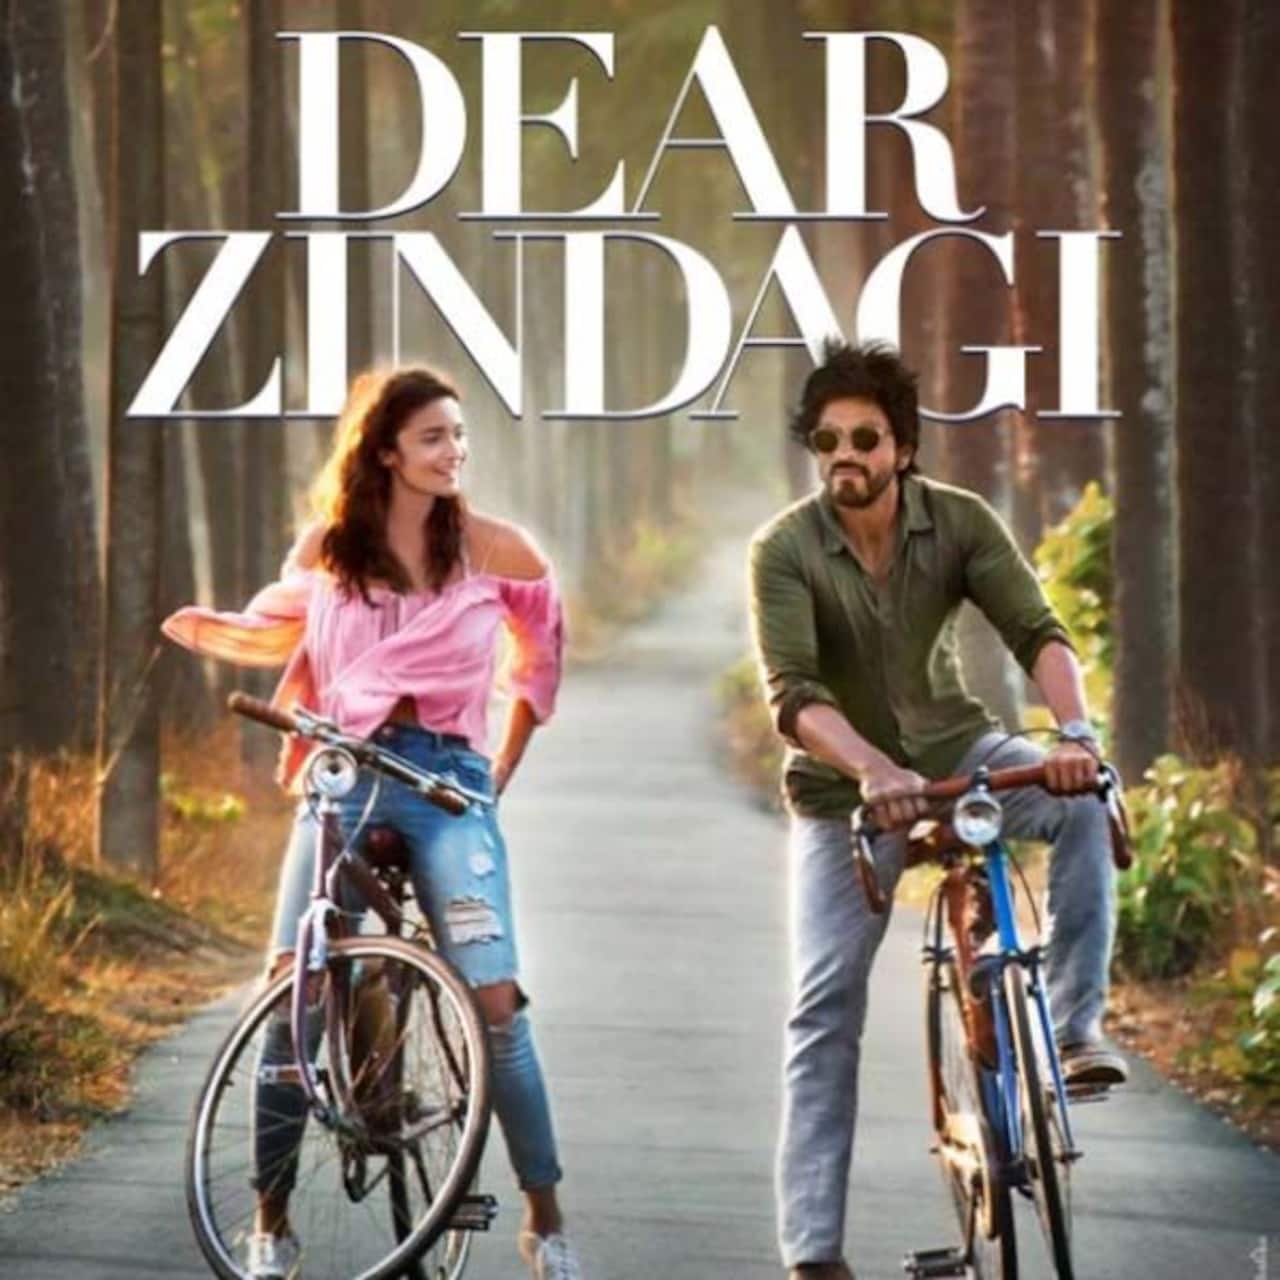 Shah Rukh Khan and Alia Bhatt - Dear Zindagi